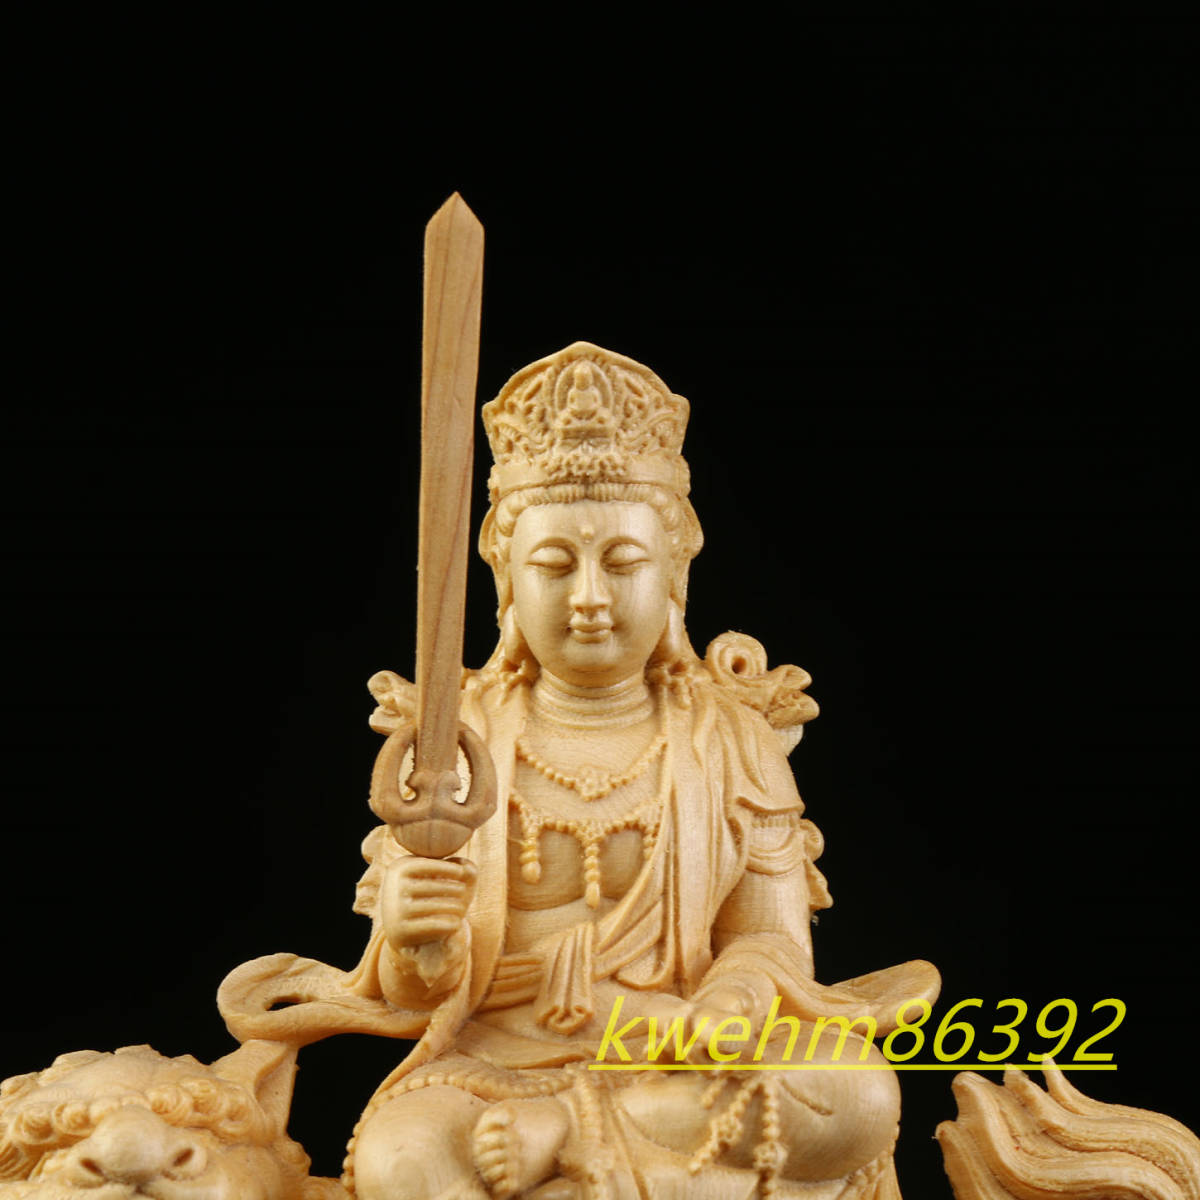 レコレクション 木彫り 仏像 文殊菩薩 普賢菩薩 座像 一式 彫刻 一刀彫 天然木檜材